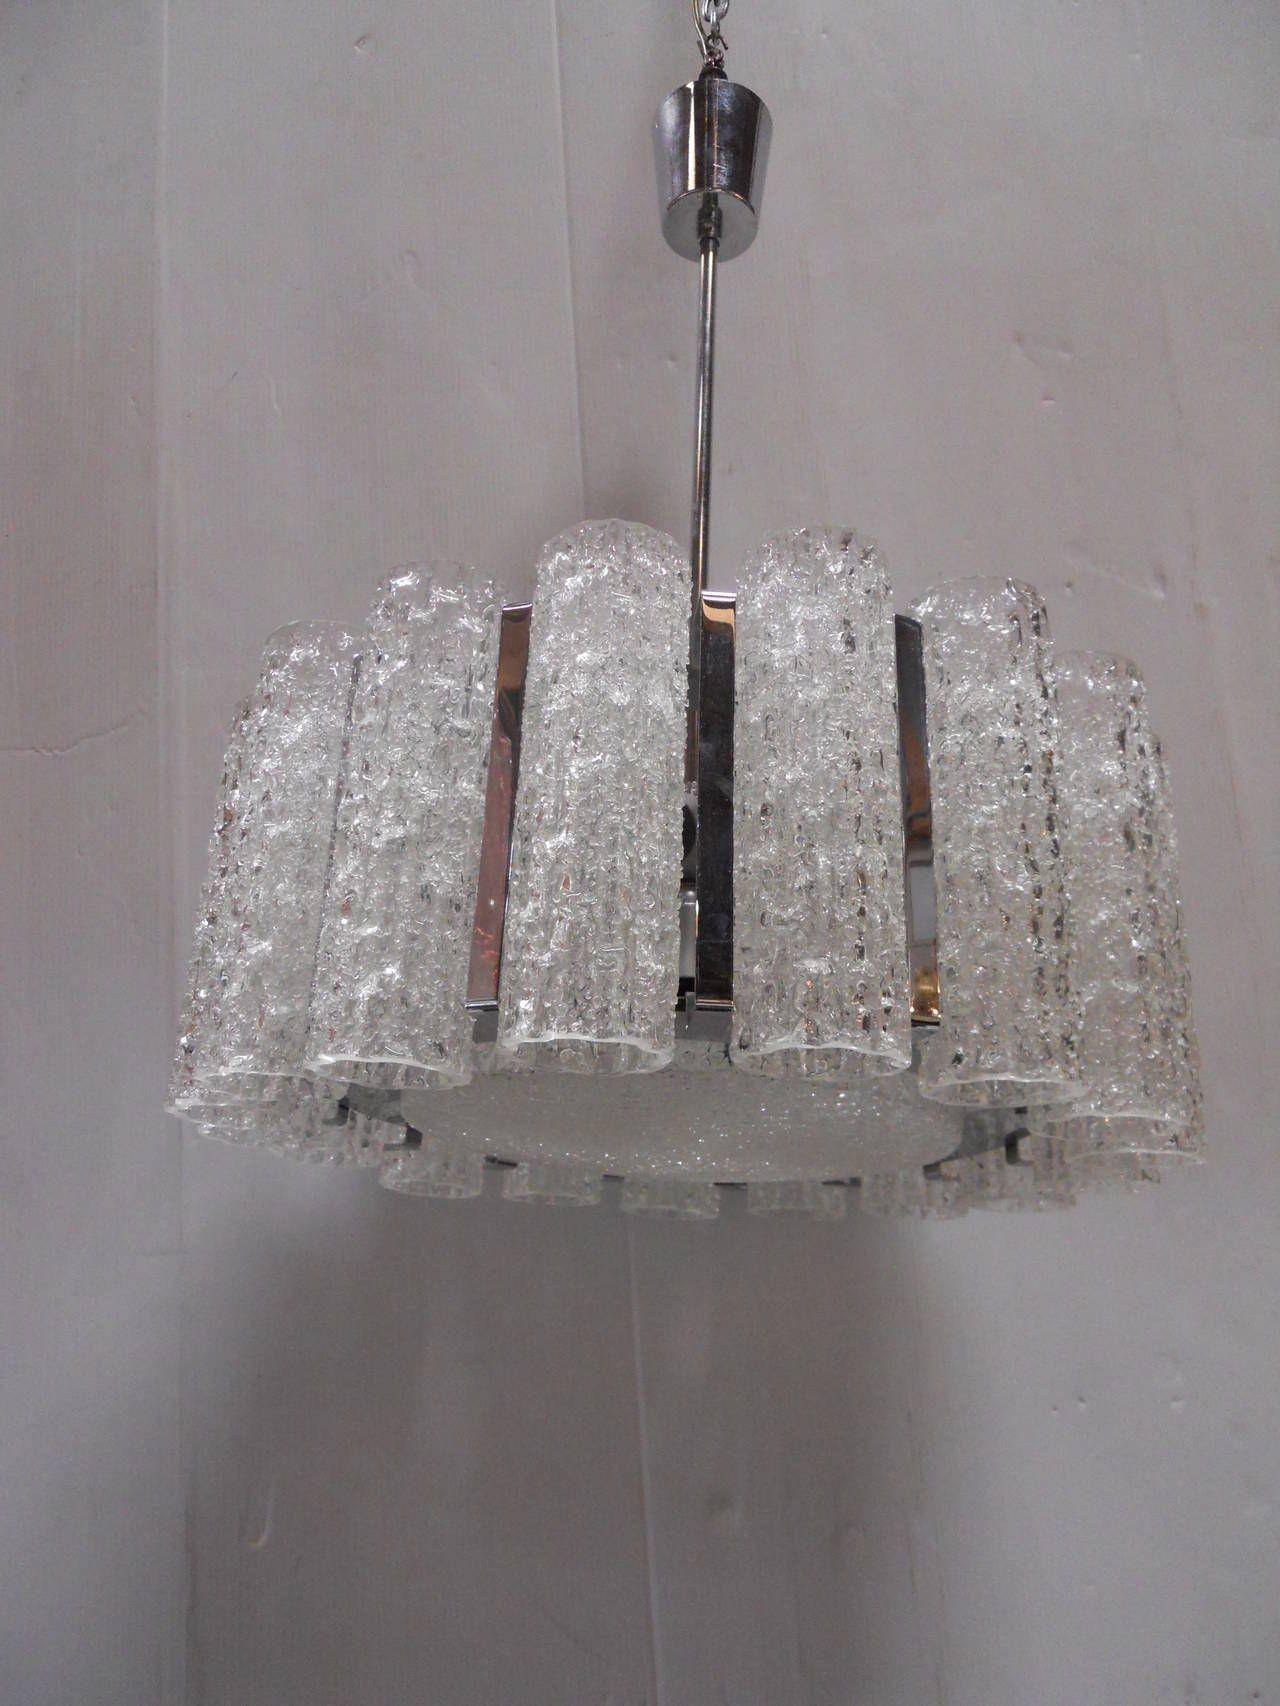 Merveilleux lustre Doria en tubes de verre et chrome, soufflé à la main à Murano, Italie.

Diamètre : 21